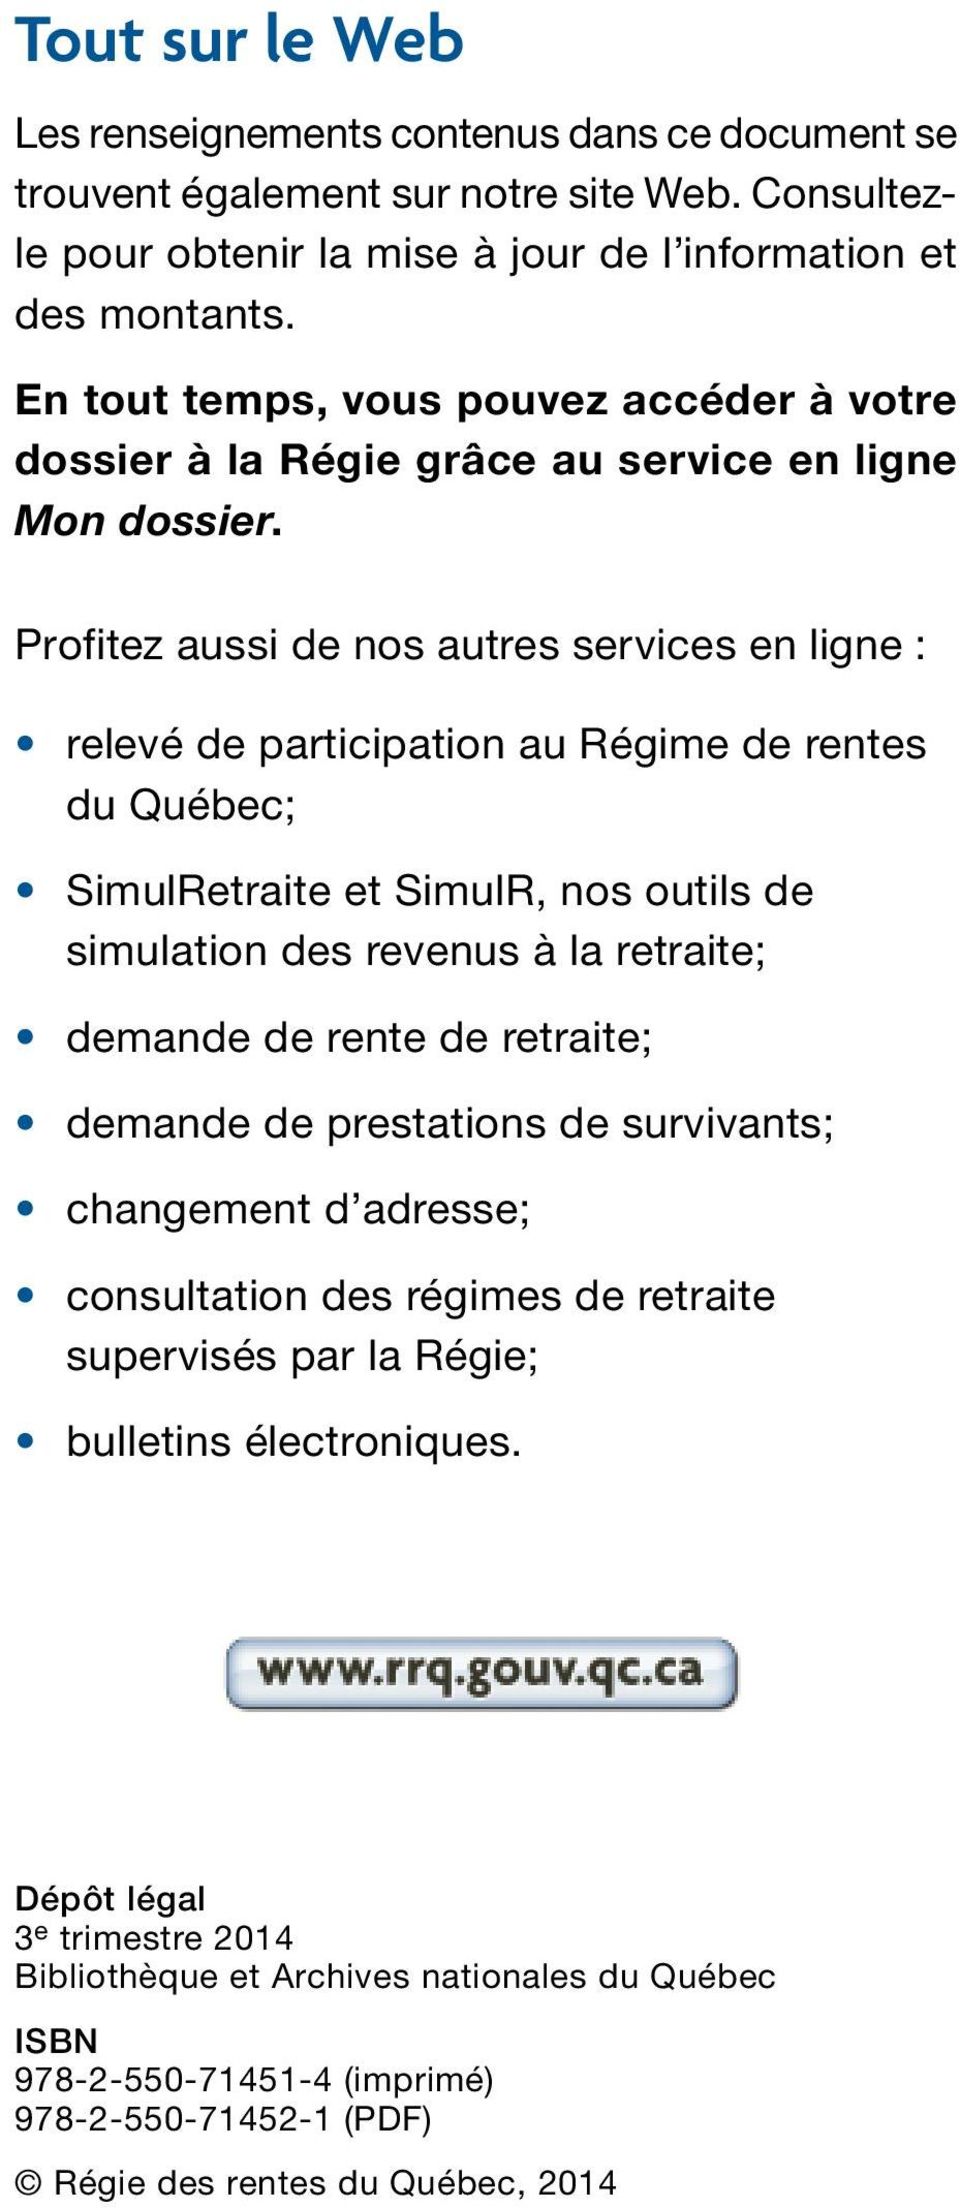 Profitez aussi de nos autres services en ligne : relevé de participation au Régime de rentes du Québec; SimulRetraite et SimulR, nos outils de simulation des revenus à la retraite; demande de rente